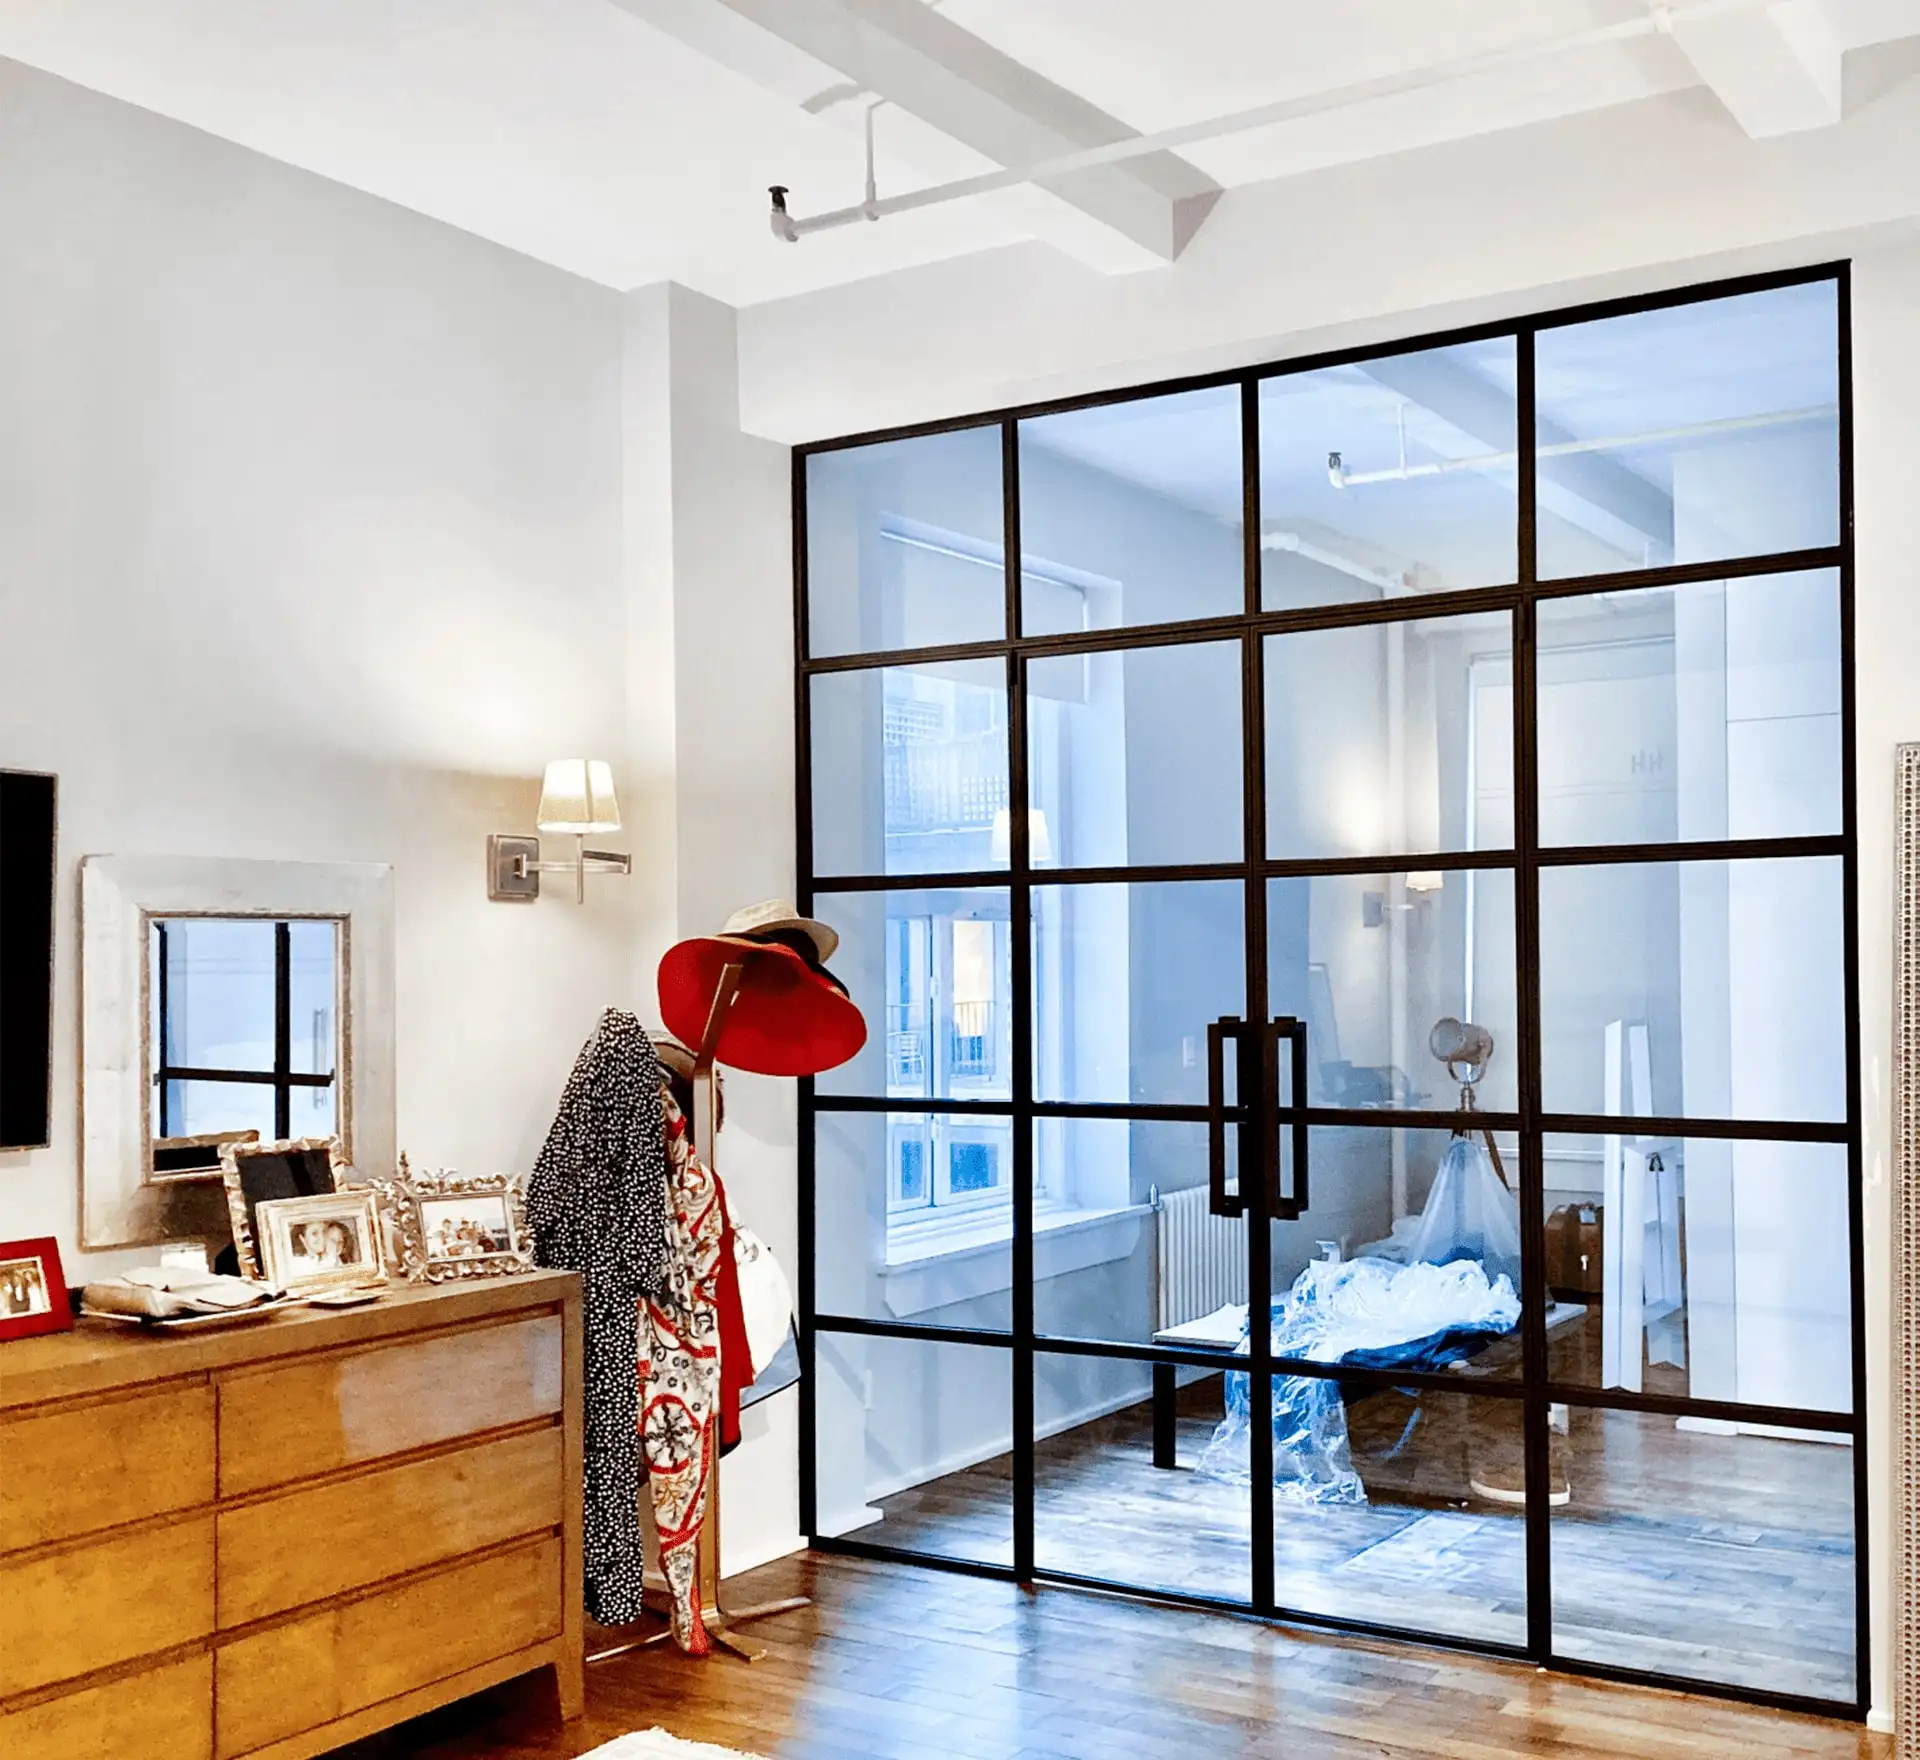 عالية الجودة الداخلية التجارية الفرنسية الشبكة تصميم واحد المزجج زجاج بإطار من الألومنيوم مكتب غرفة المعيشة حائط فاصل